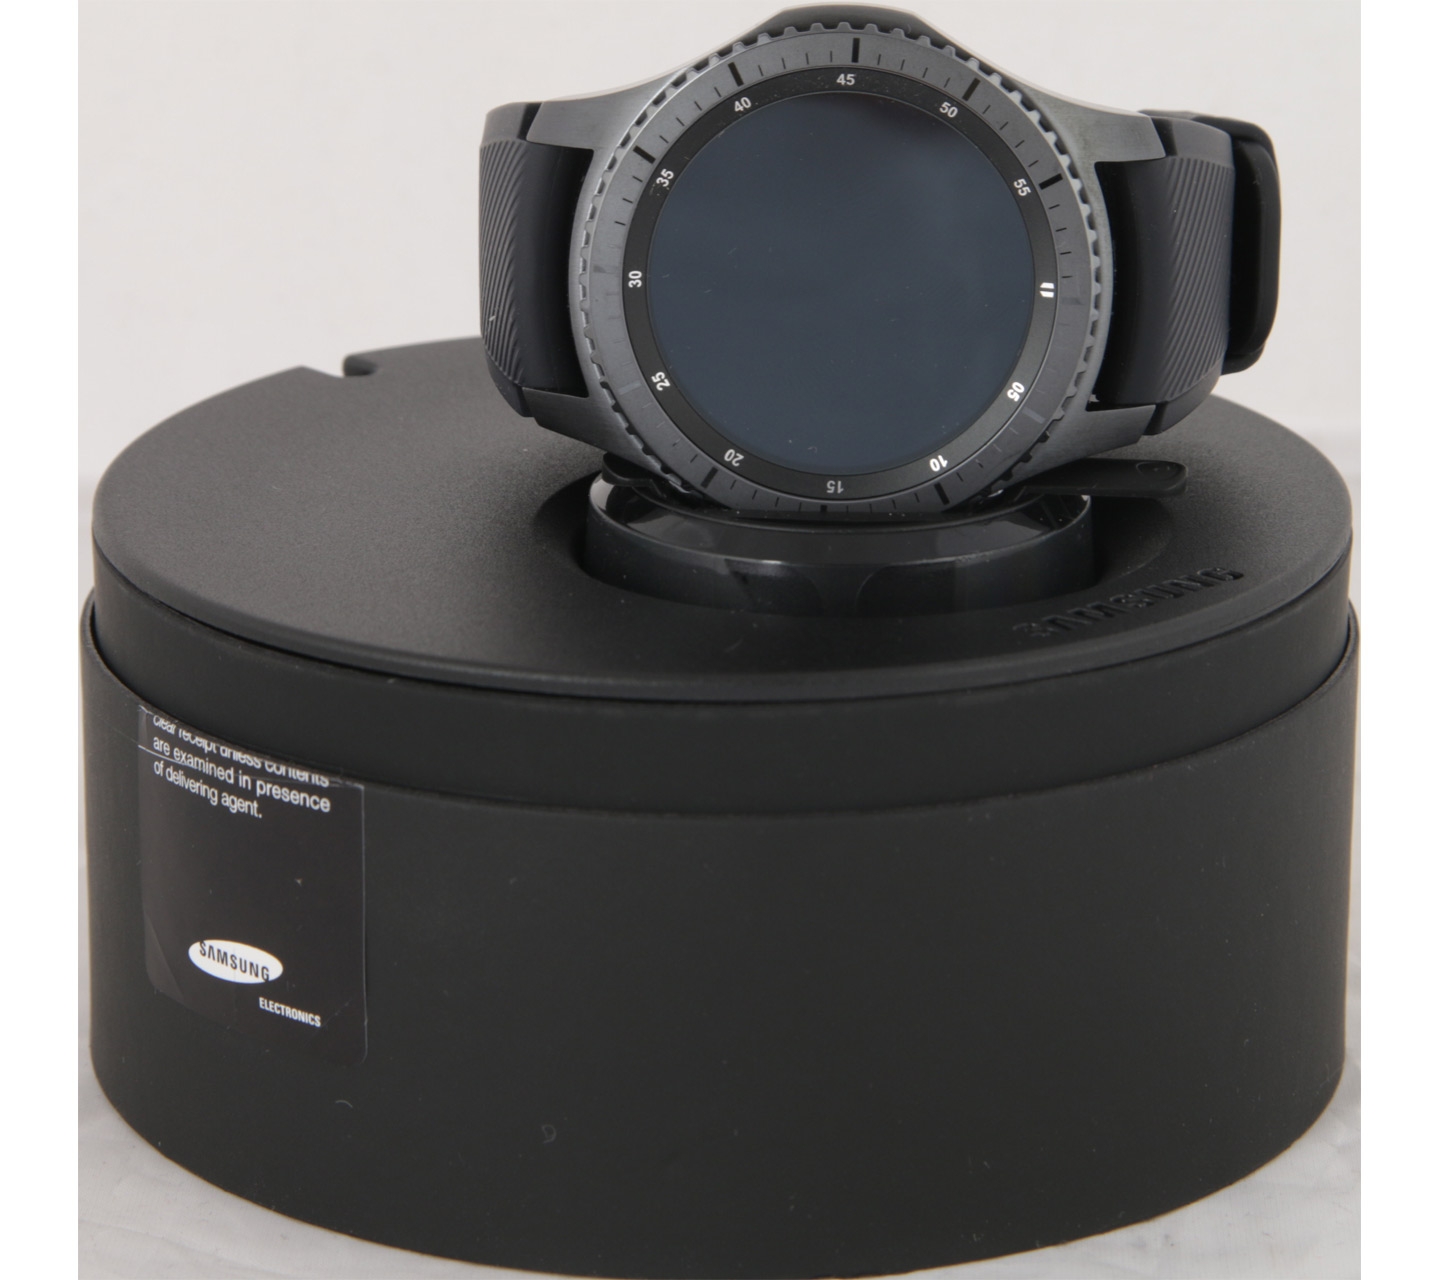 Samsung Black Gear S3 Frontier Watch